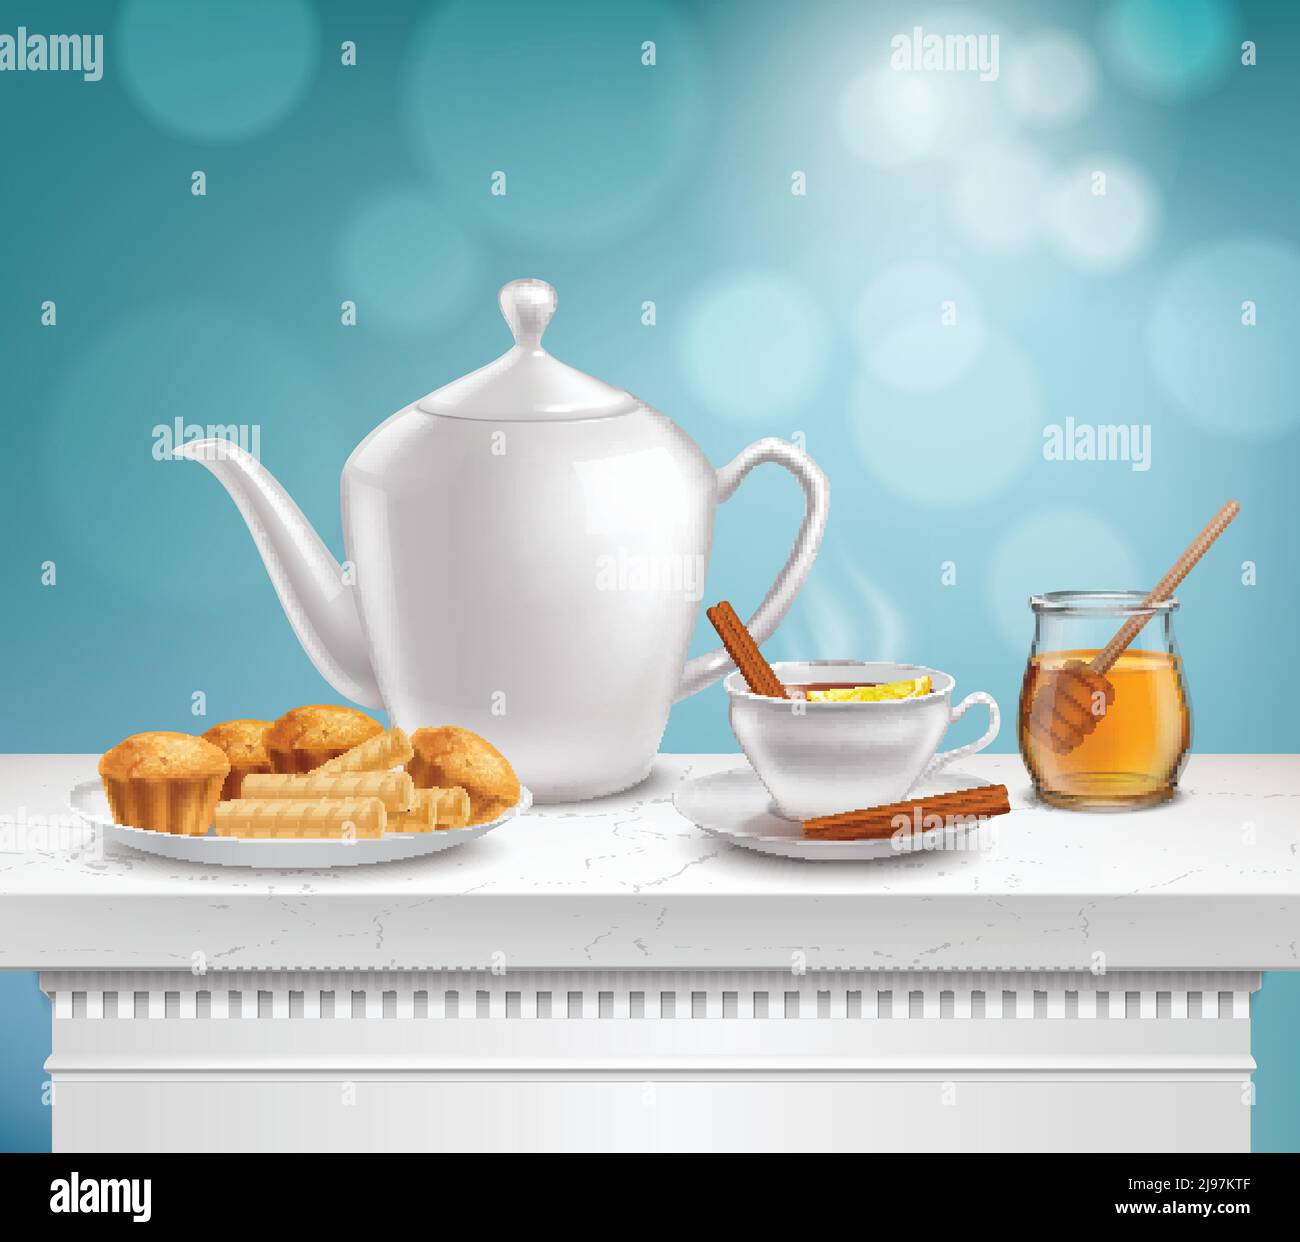 Teiera in porcellana bianca, vasetto di miele in vetro teacup caldo e piastra muffin waffle composizione realistica illustrazione vettoriale Illustrazione Vettoriale